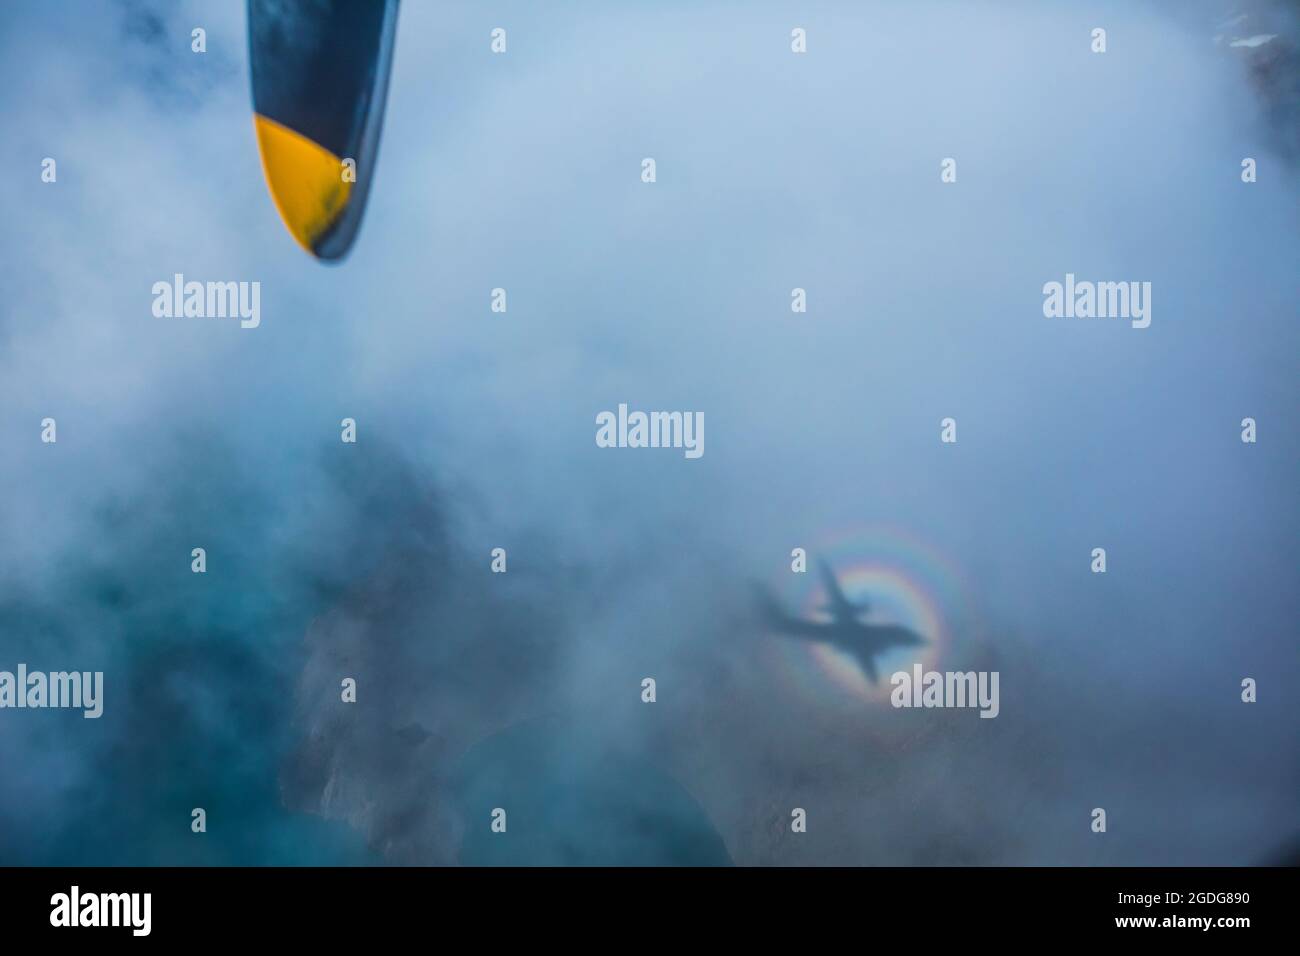 Abstrakte Ansicht des Flugzeugschattens in einem Regenbogenring Stockfoto